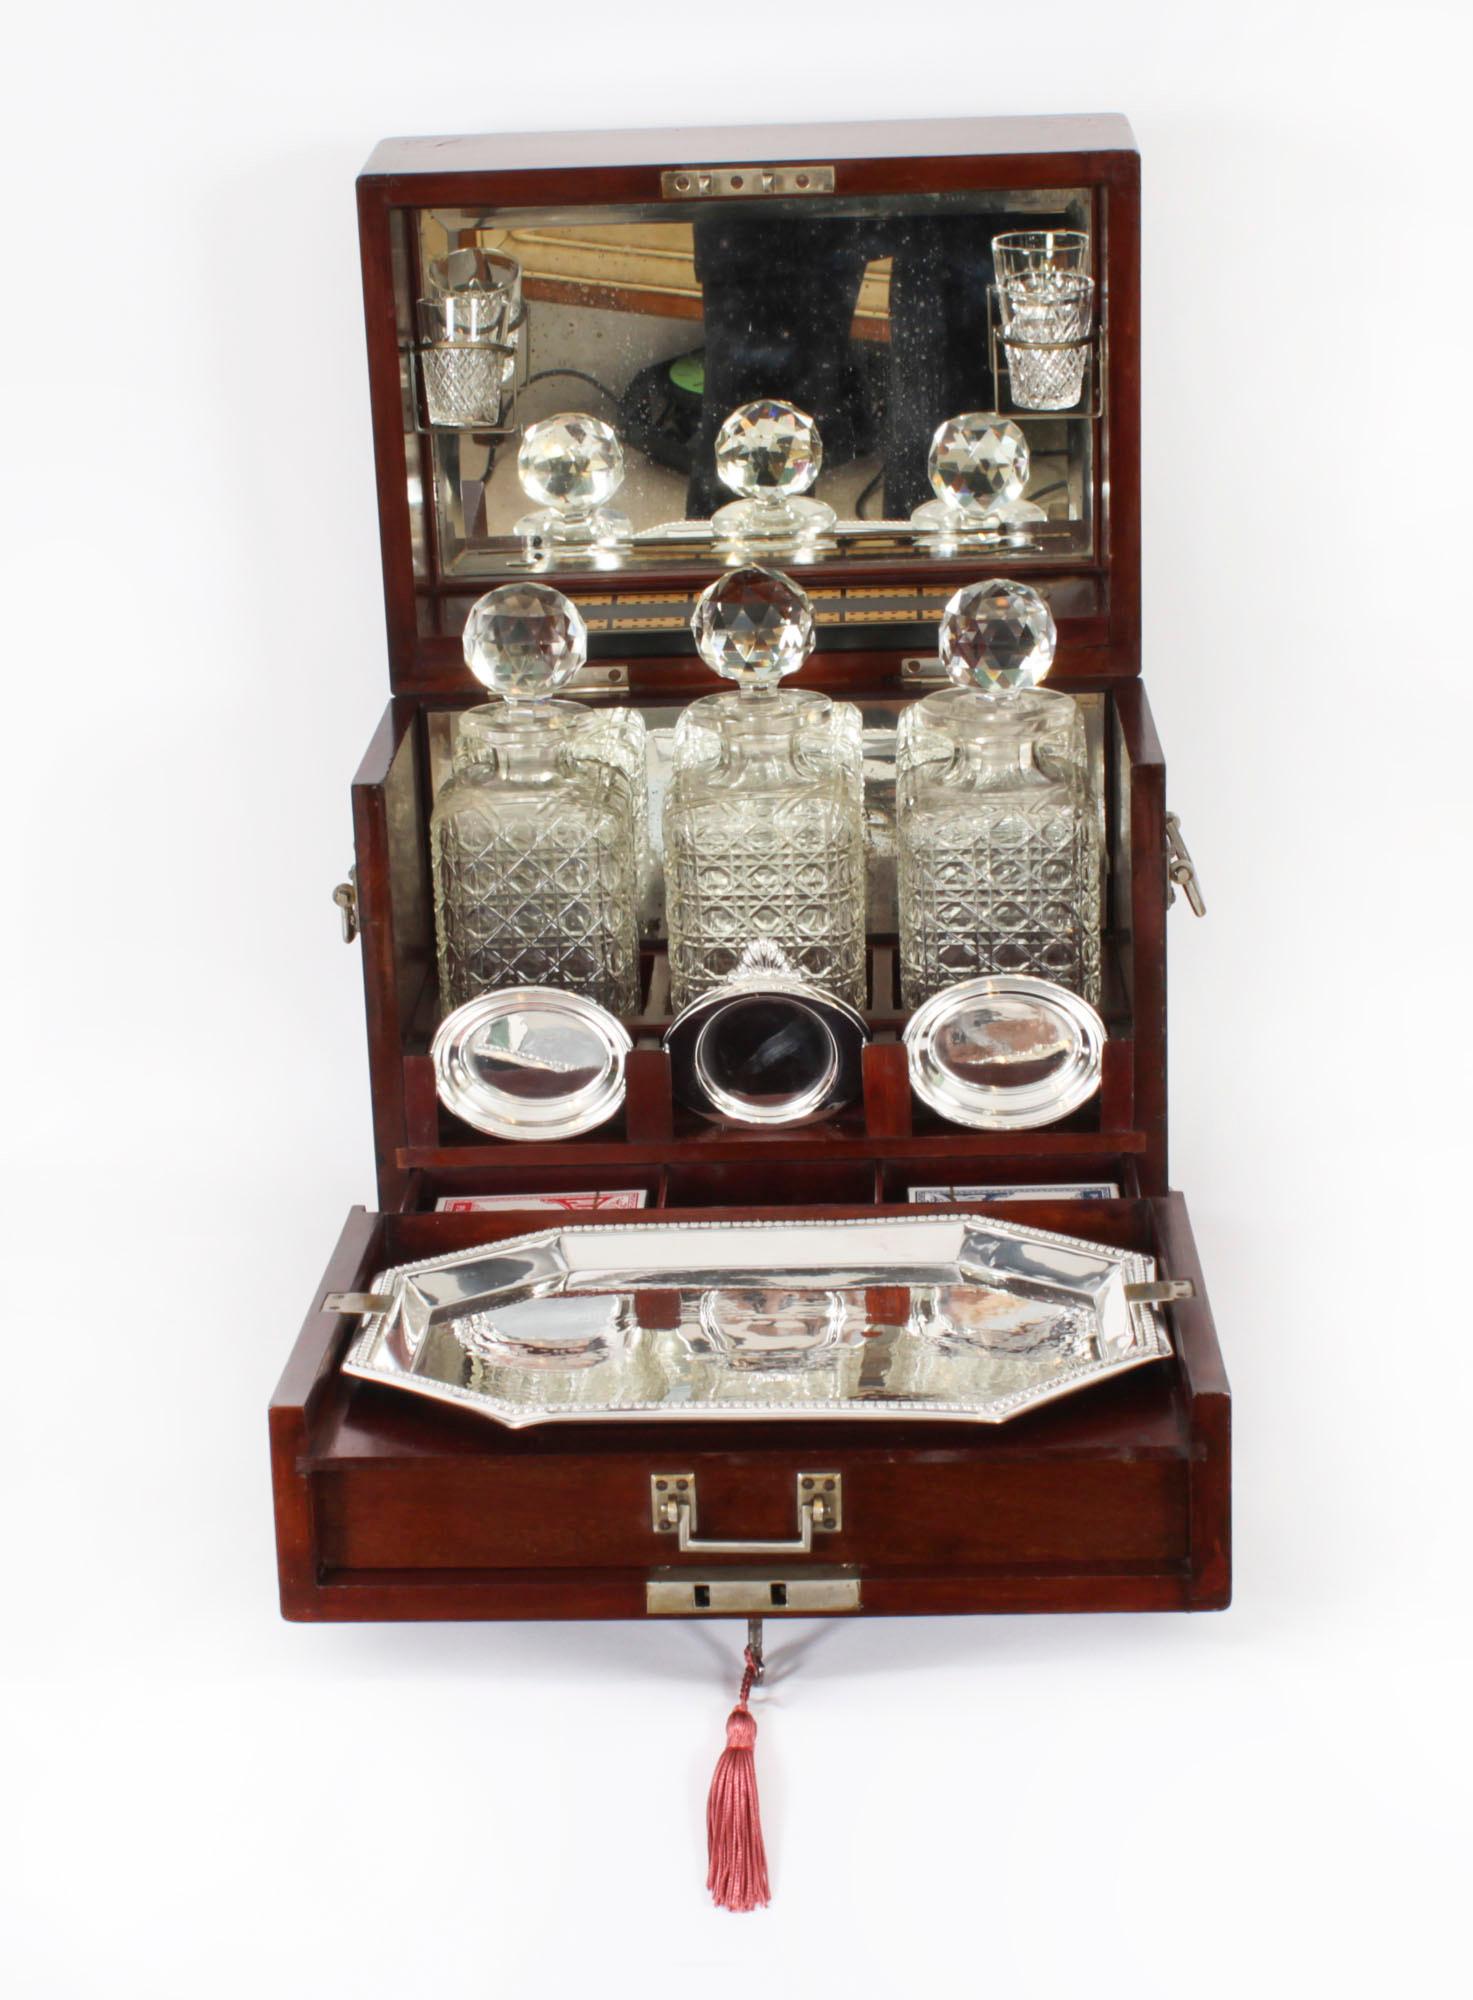 Il s'agit d'un fabuleux recueil de jeux anciens de l'époque victorienne.  tantalus, circa 1880 en date.

Il s'agit de trois bouteilles de liqueur en cristal taillé avec bouchons, d'une paire de verres à liqueur gravés, d'un plateau en métal argenté